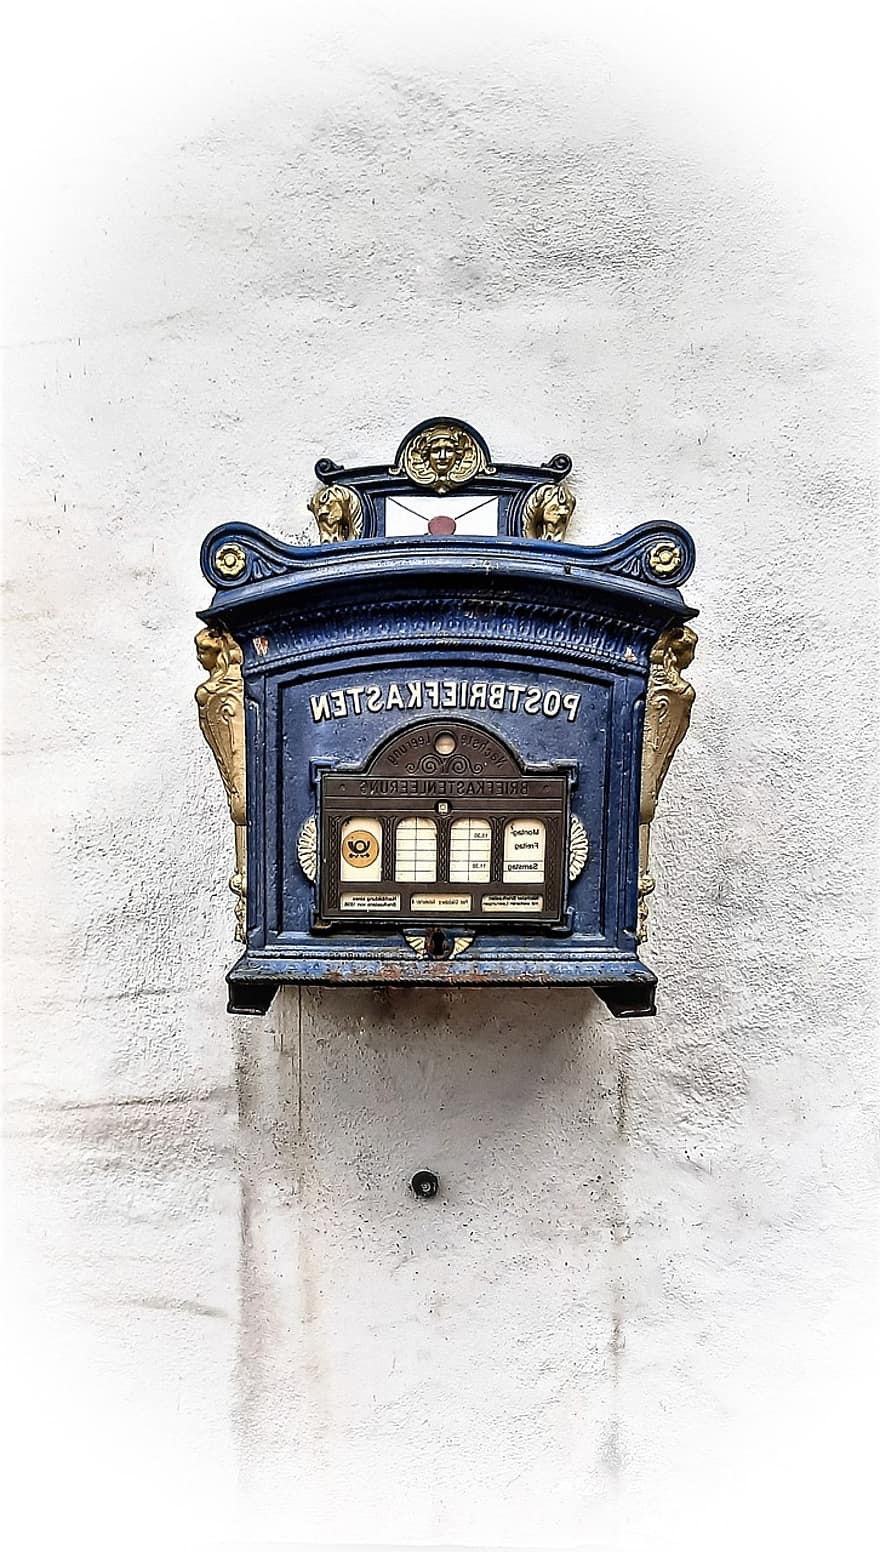 صندوق البريد ، صندوق بريد ، عتيق ، قديم ، صندوق الرسائل الأزرق ، لوحة الرسالة ، ثقب الرسالة